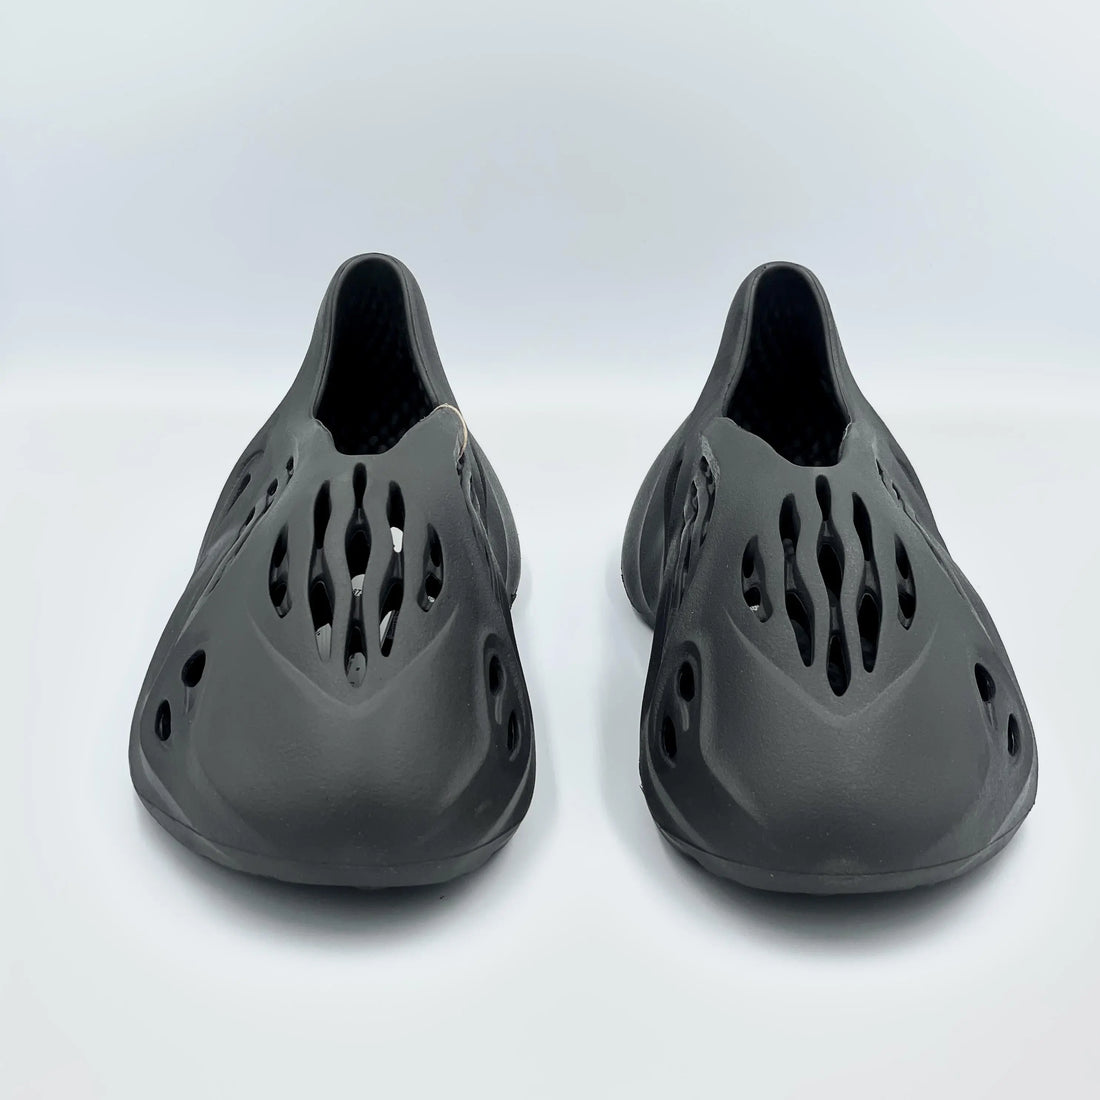 Adidas Yeezy Foam Runner Onyx  SA Sneakers